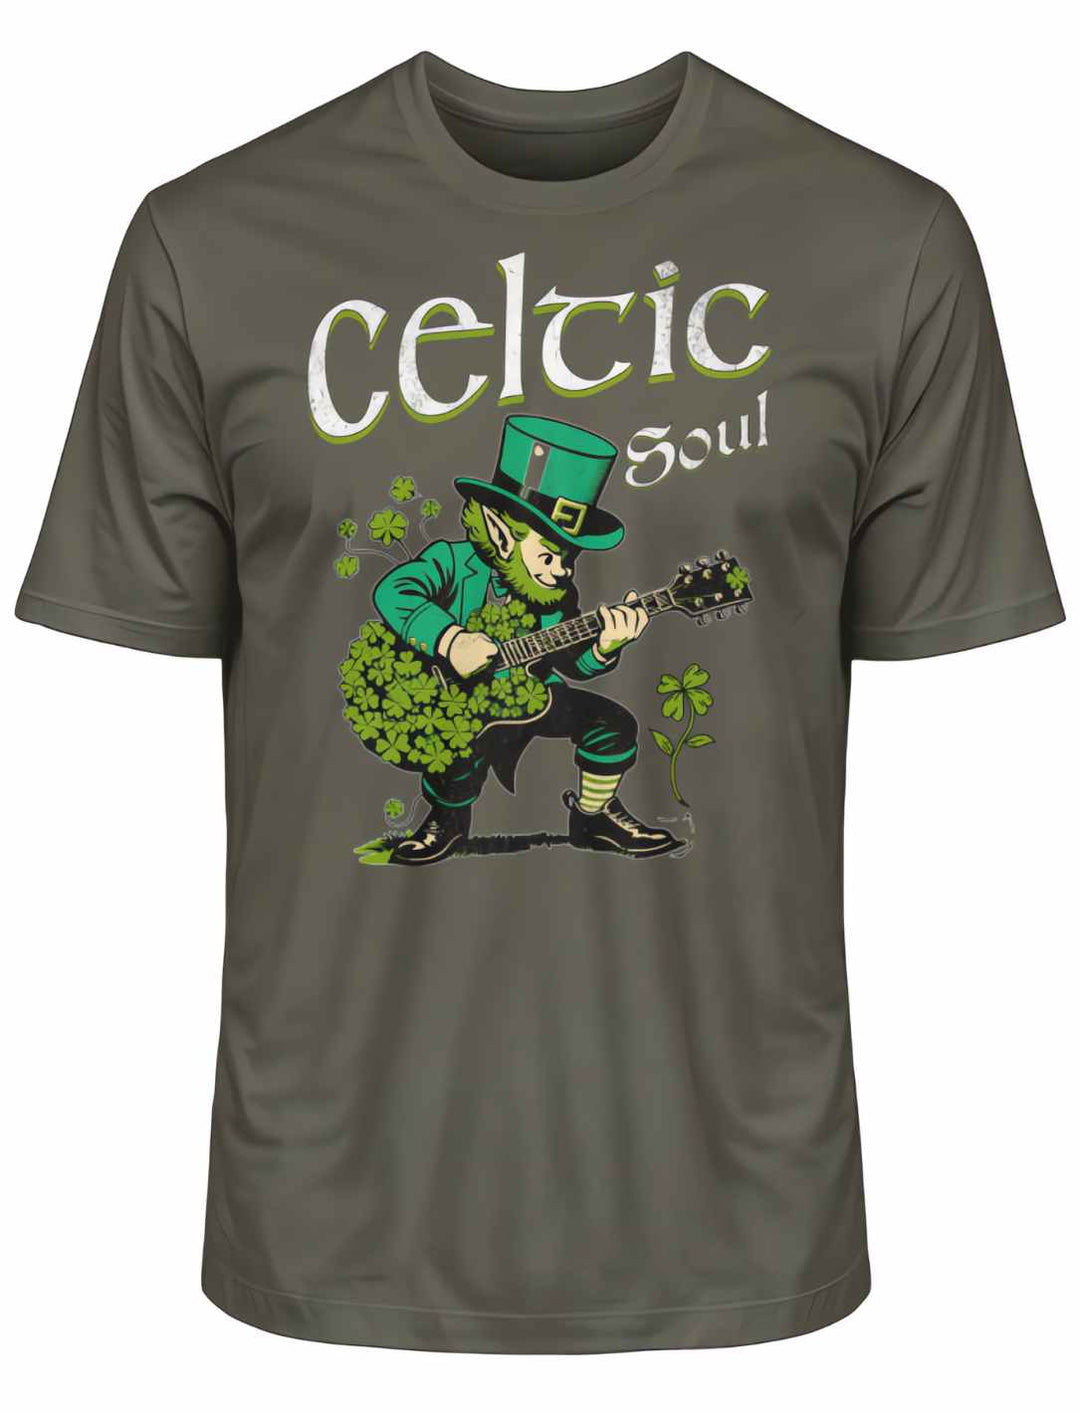 Celtic Soul T-Shirt in Khaki, auf weißem Hintergrund liegend, hebt das keltische Kobold-Design hervor.